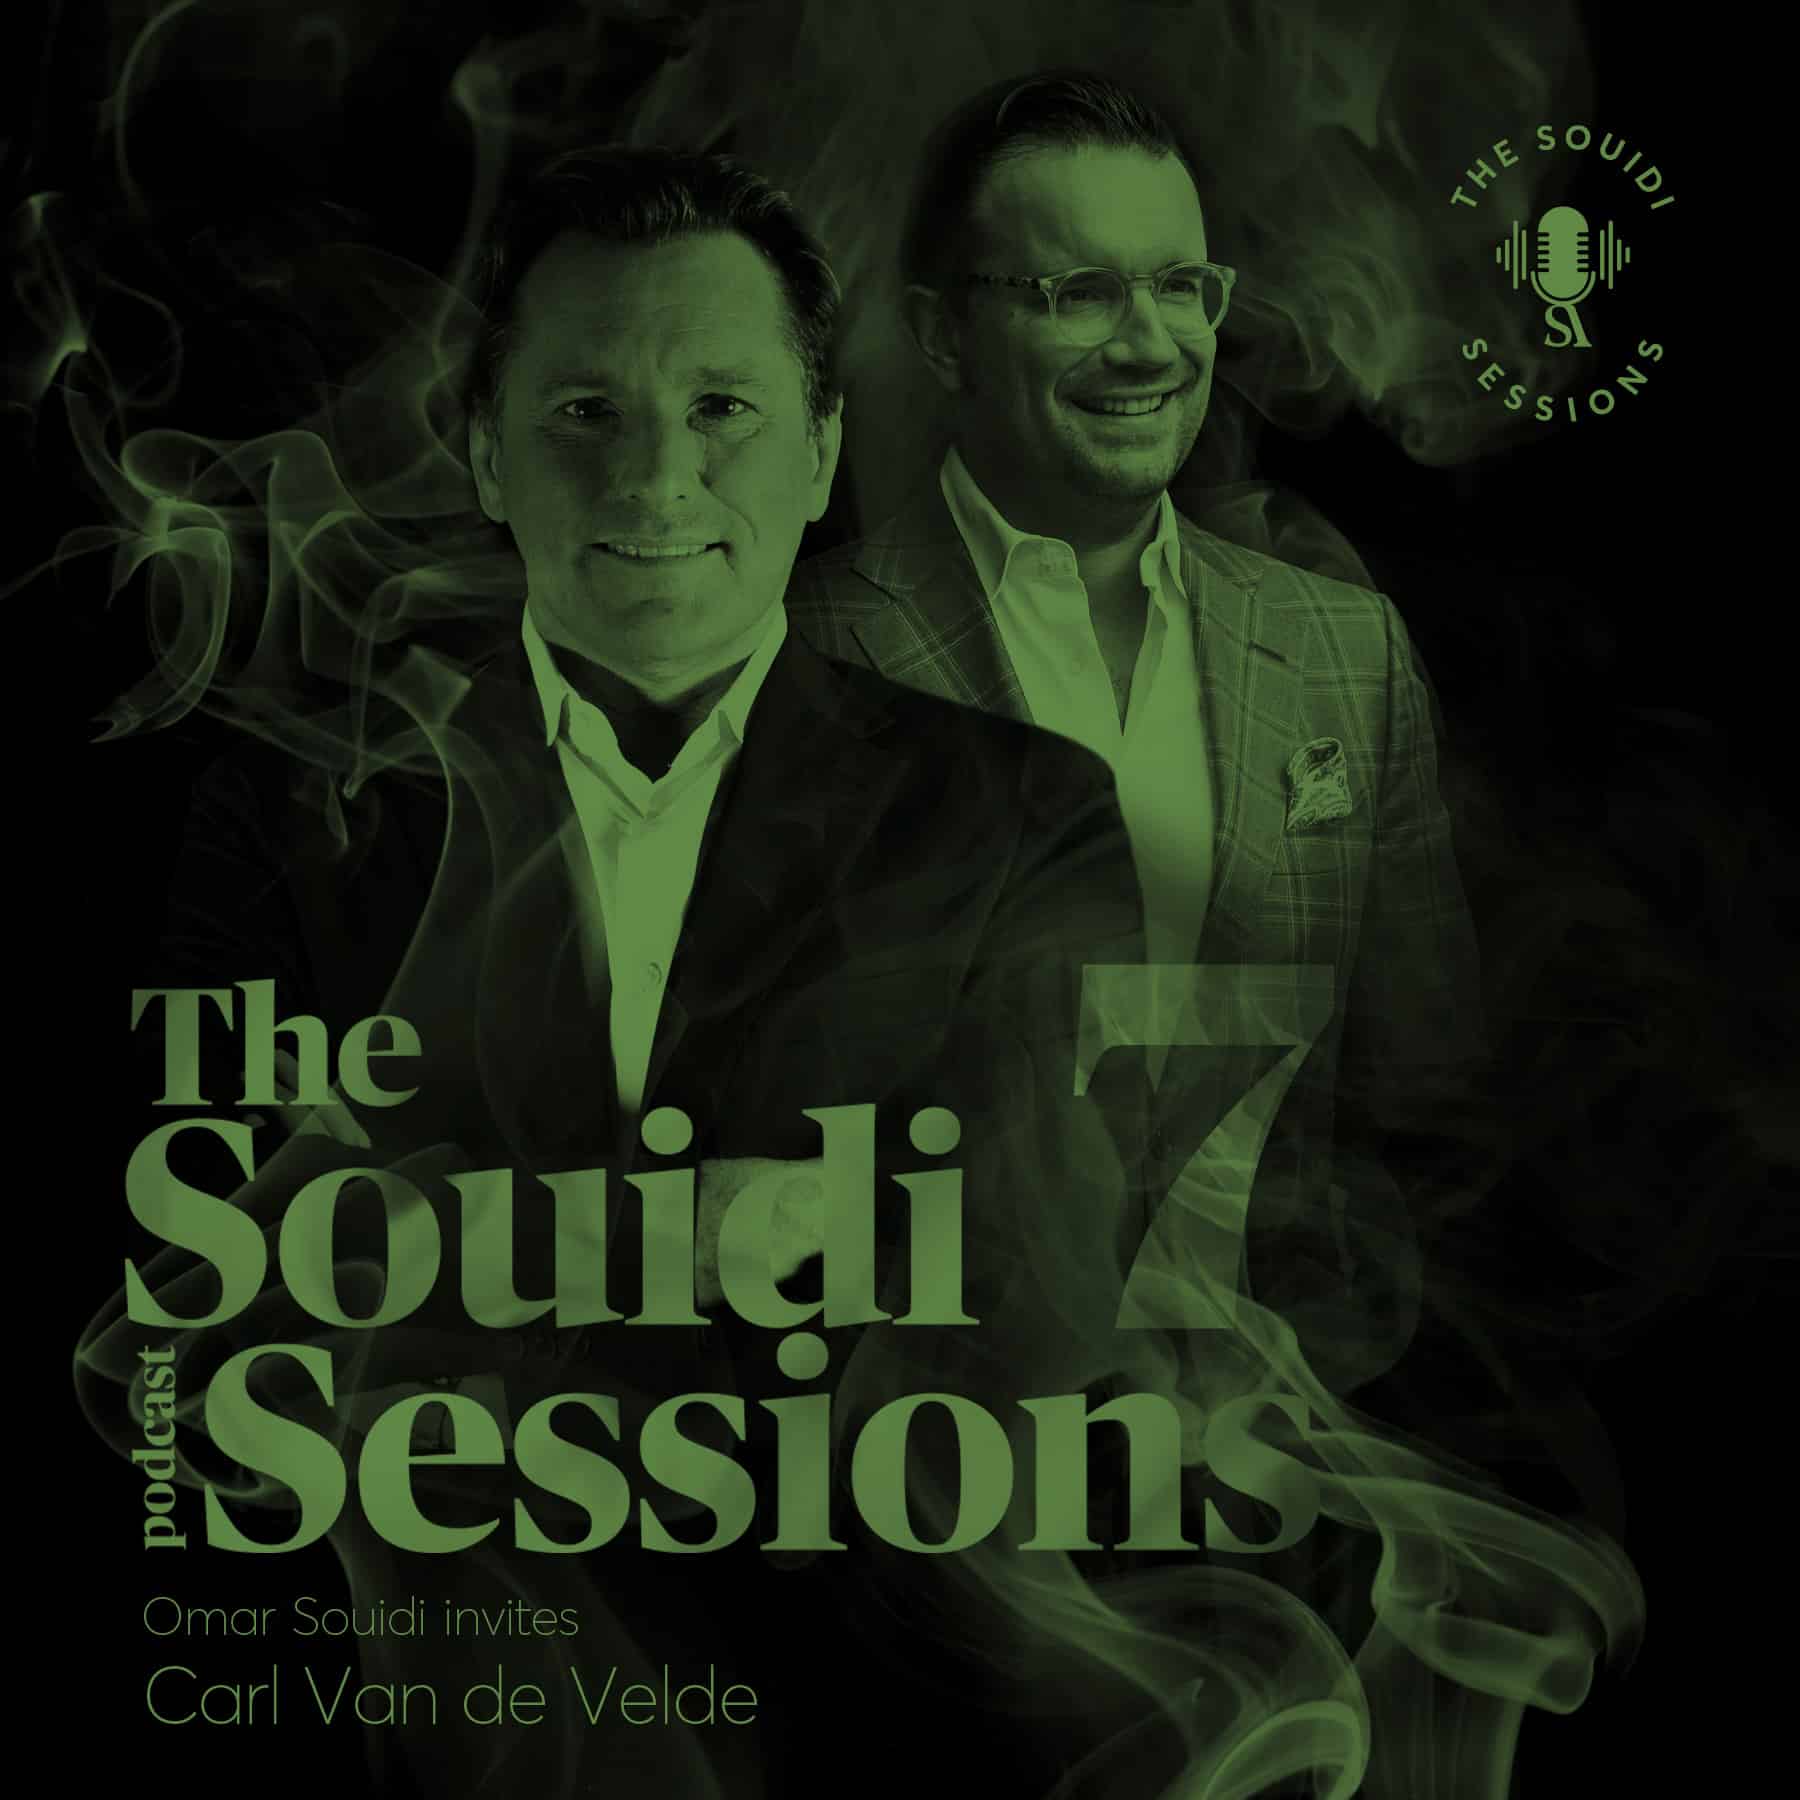 Souidi sessions met Carl Van de Velde